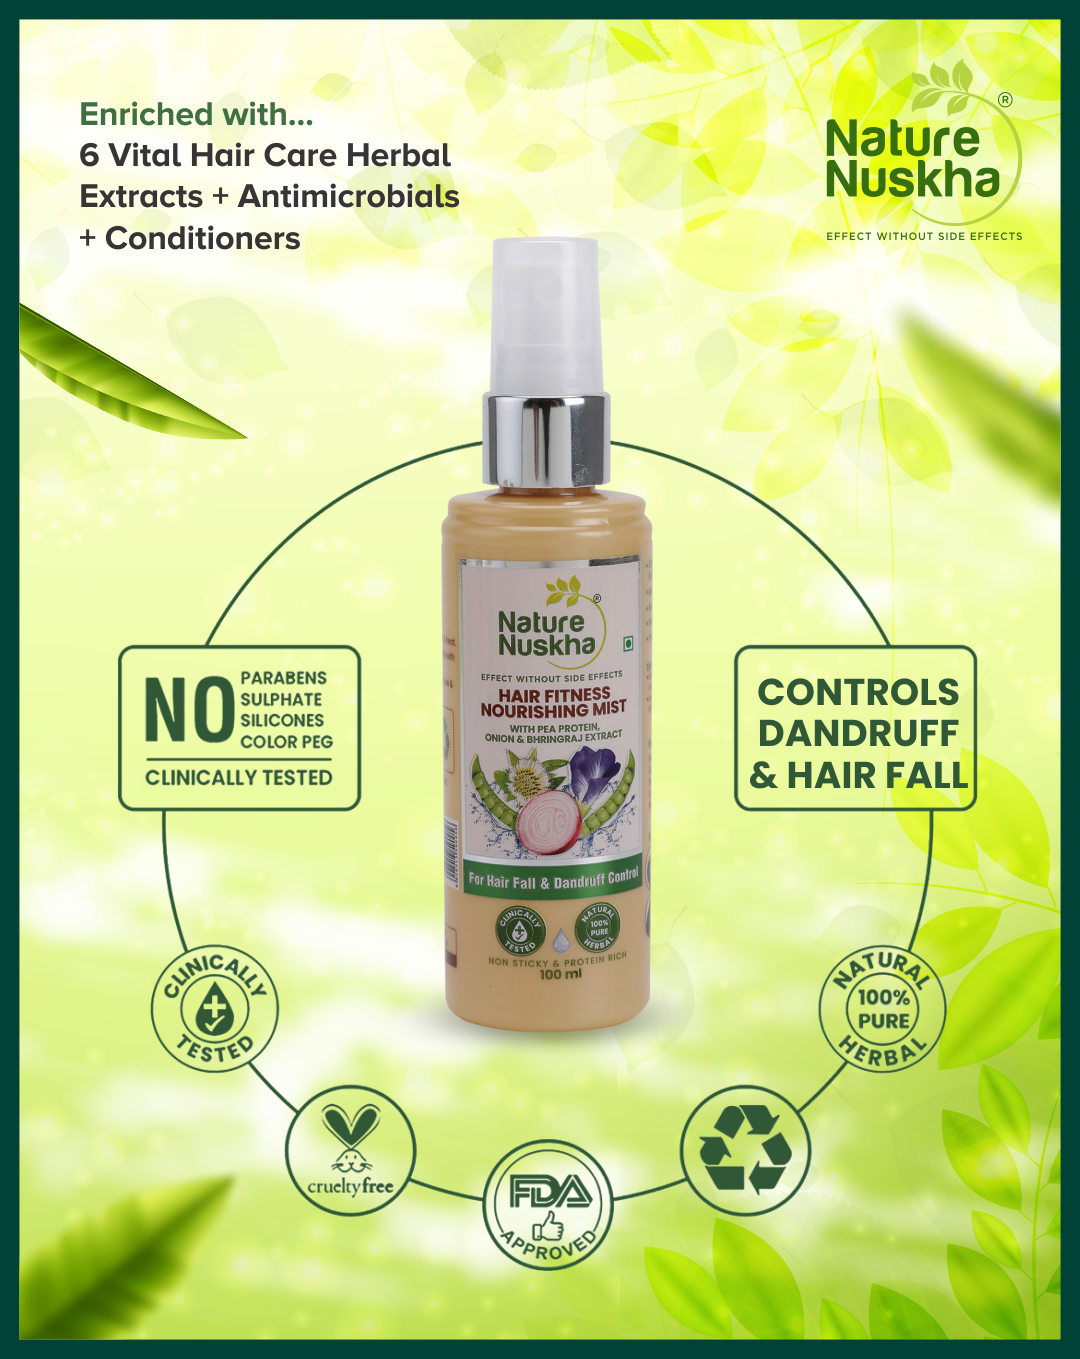 Hair fall control oil,  Hair mist, Bhringaraj shampoo the 3 step combo for total-solution hair fitness